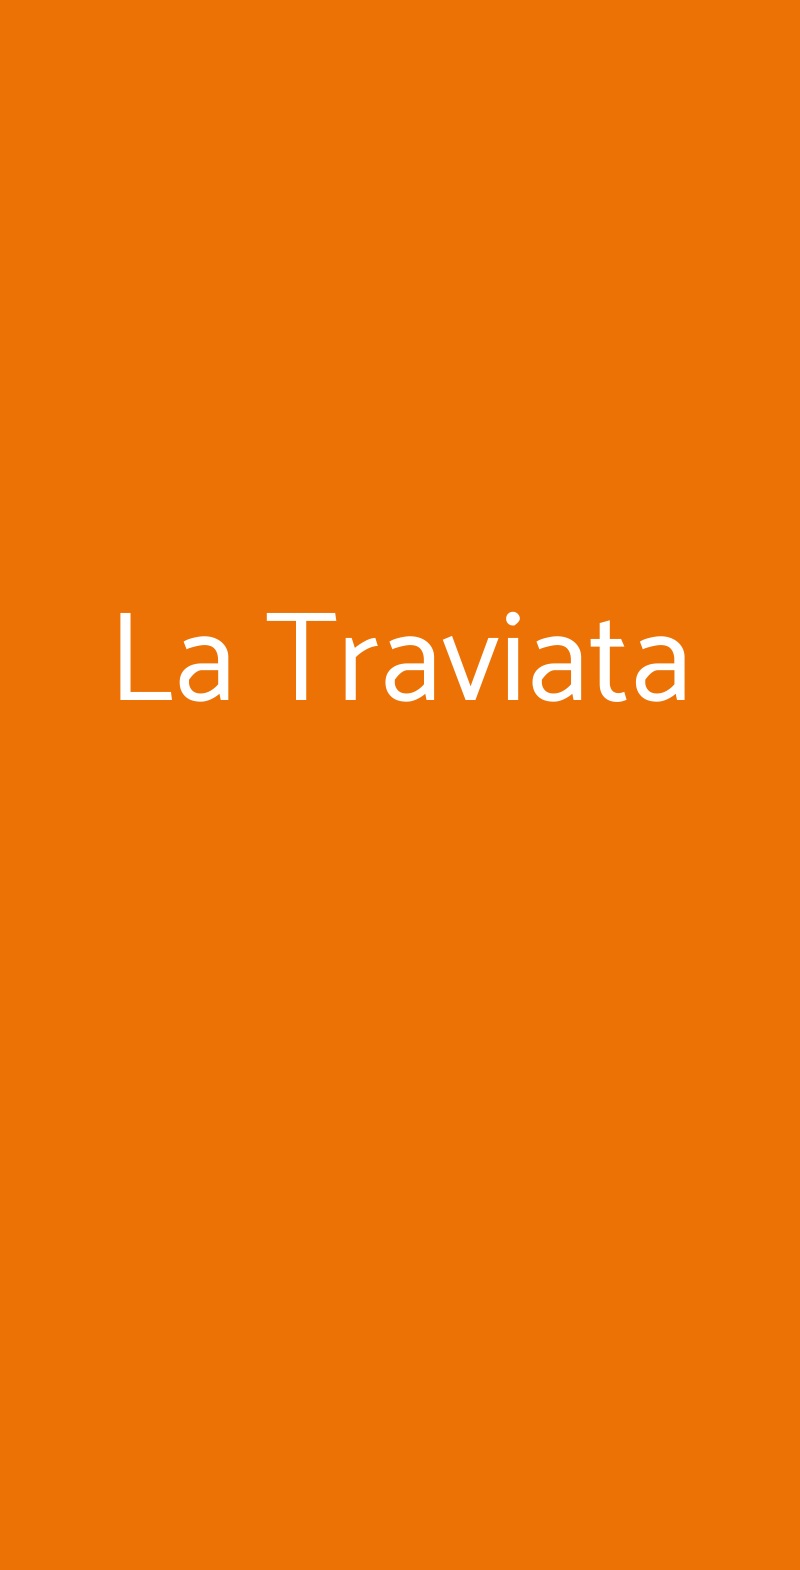 La Traviata Bologna menù 1 pagina